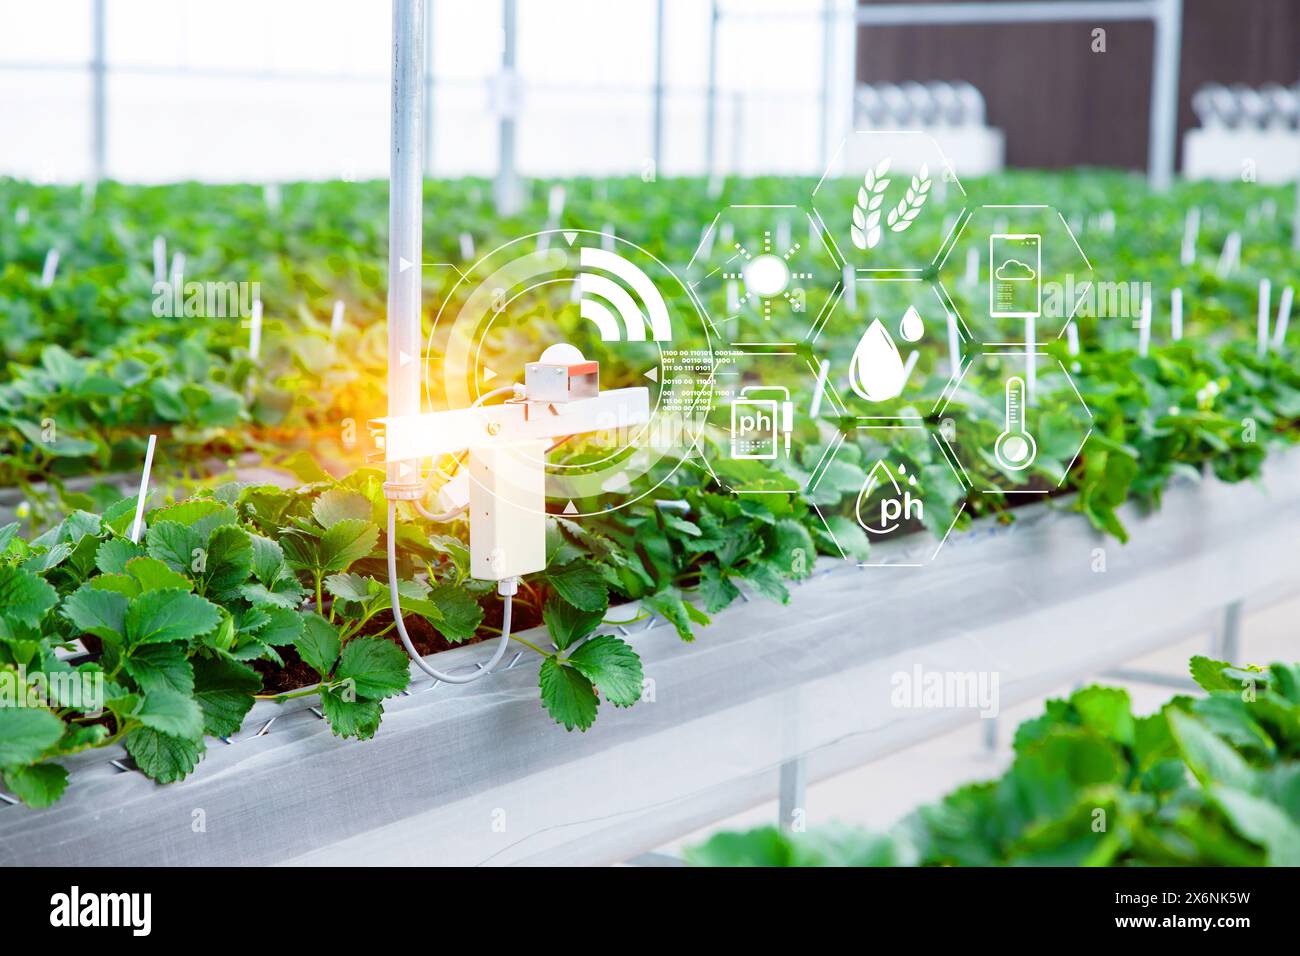 Sensore per agricoltura tecnologia agricola intelligente co2 illuminazione umidità dispositivo di monitoraggio della temperatura per impianti di automazione vivaio in serra Foto Stock